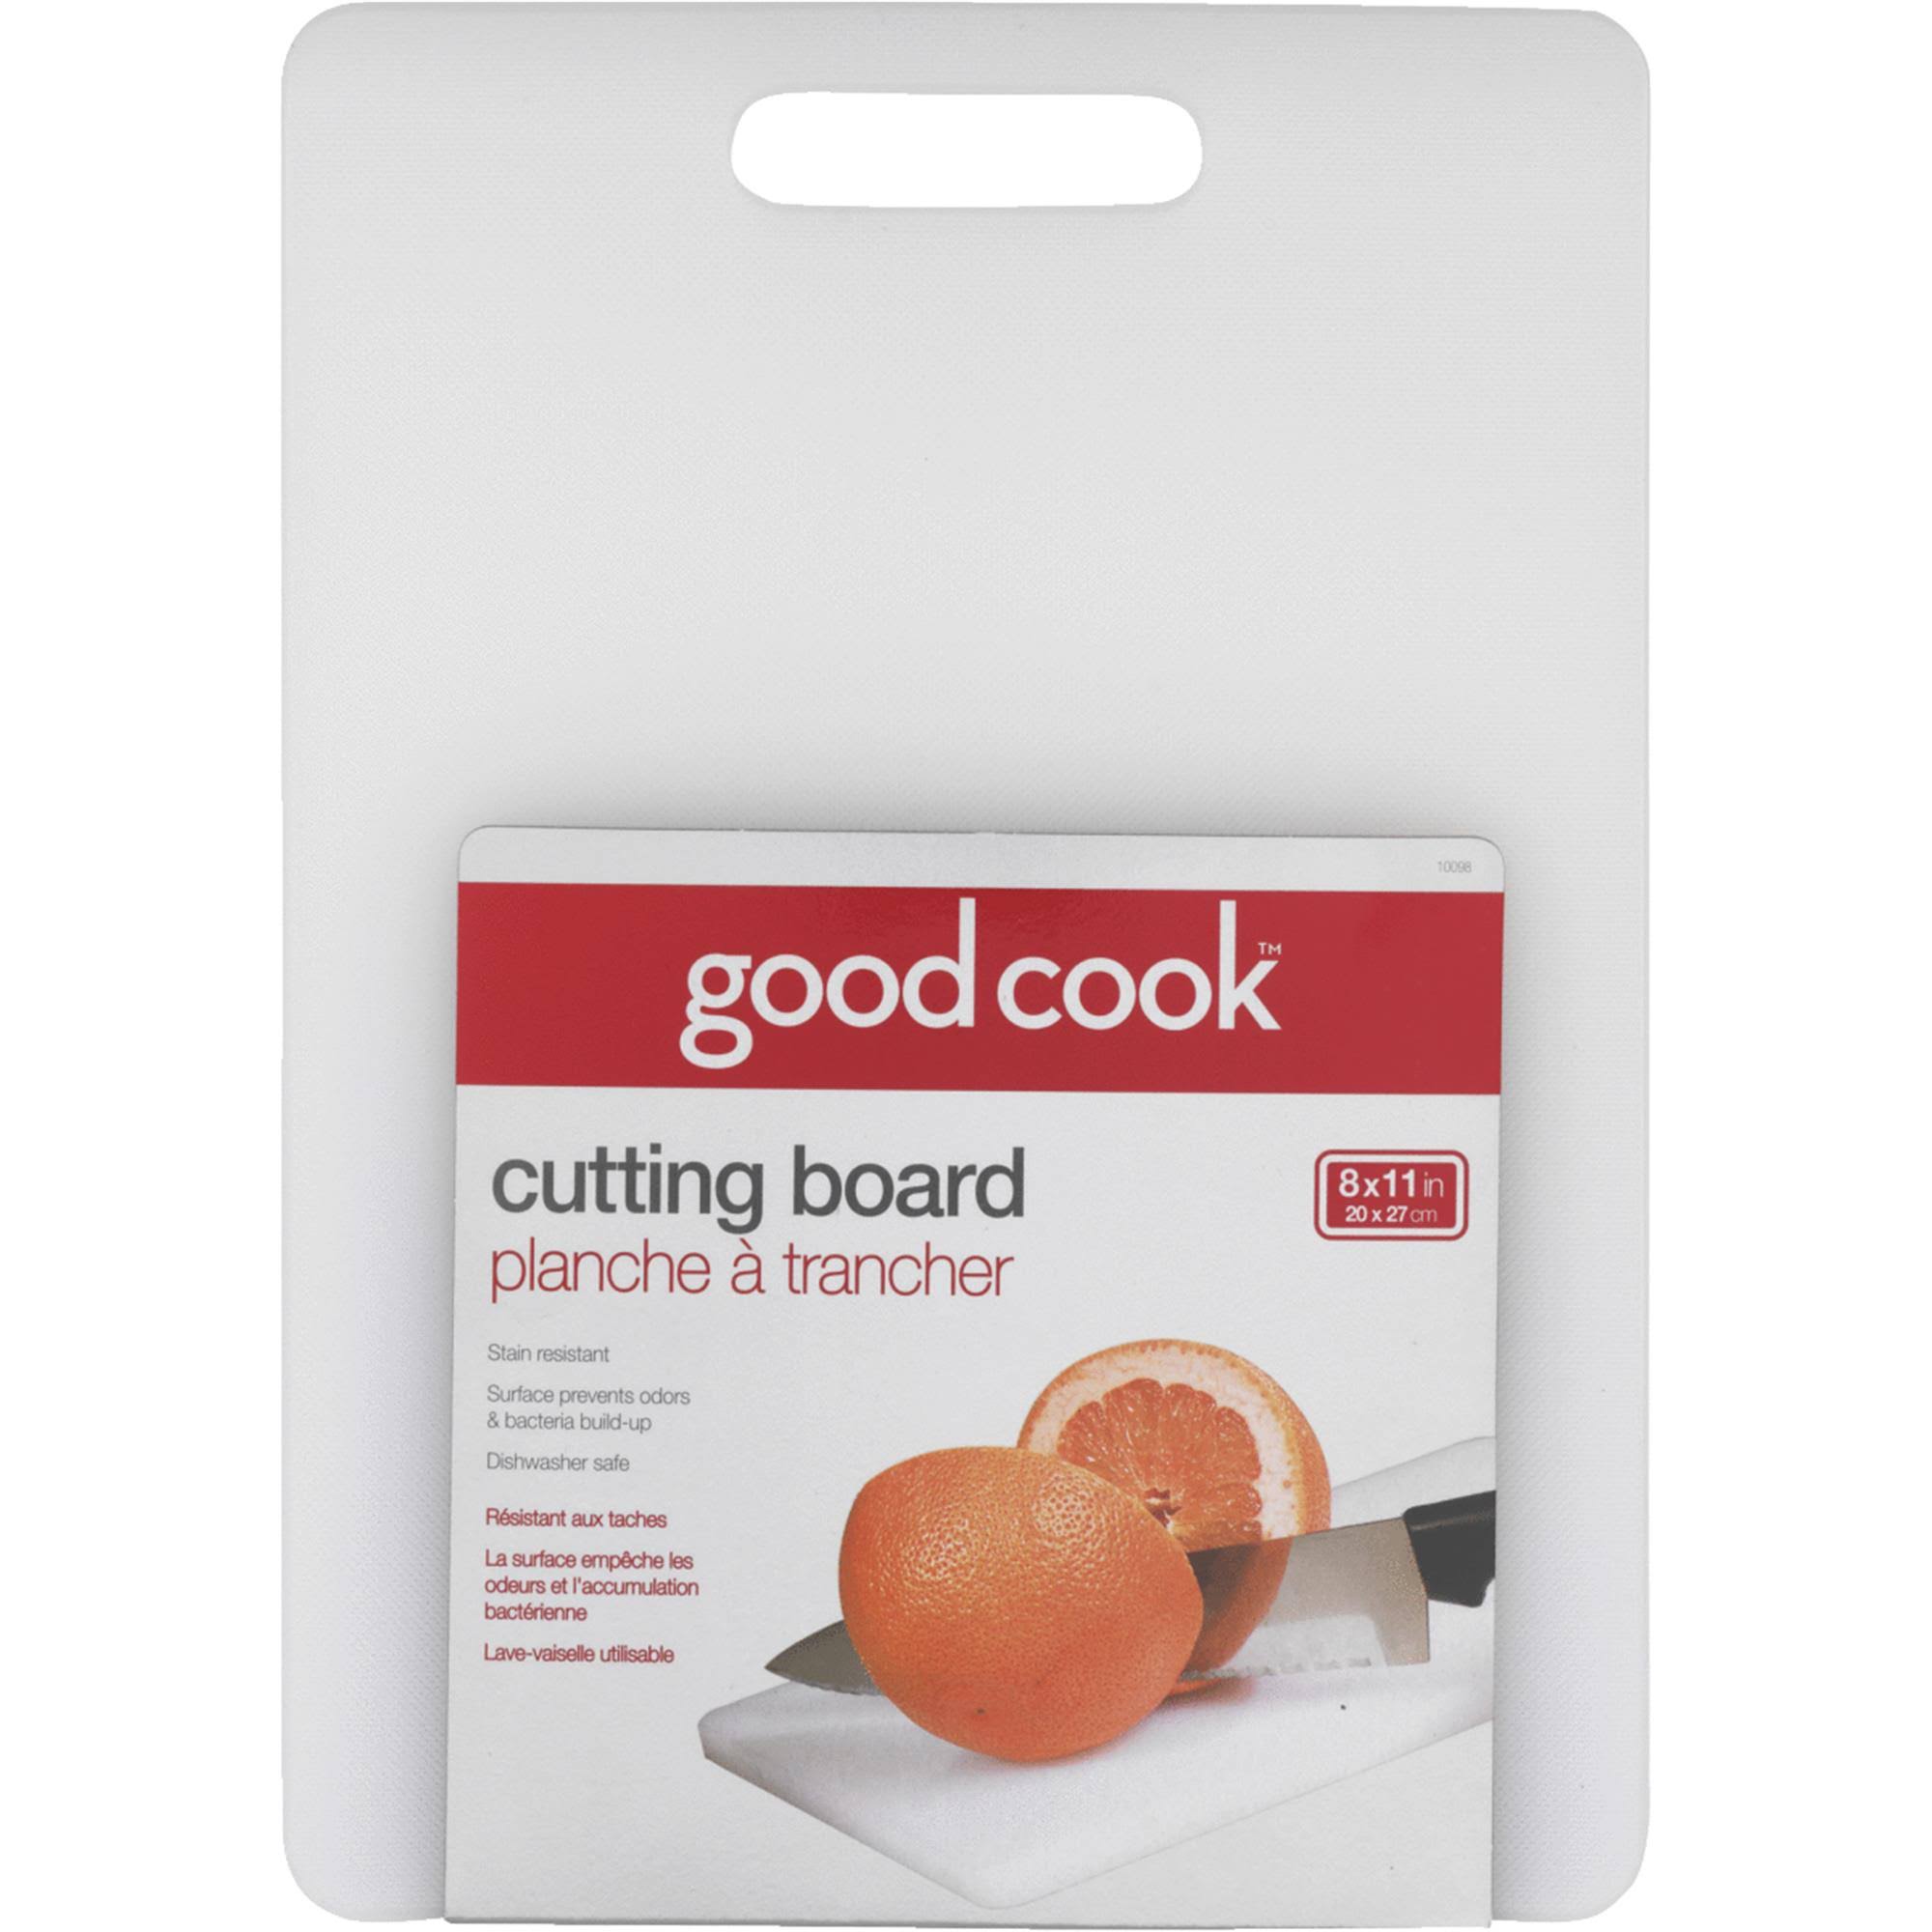 Good Cook 8" x 11" Cutting Board